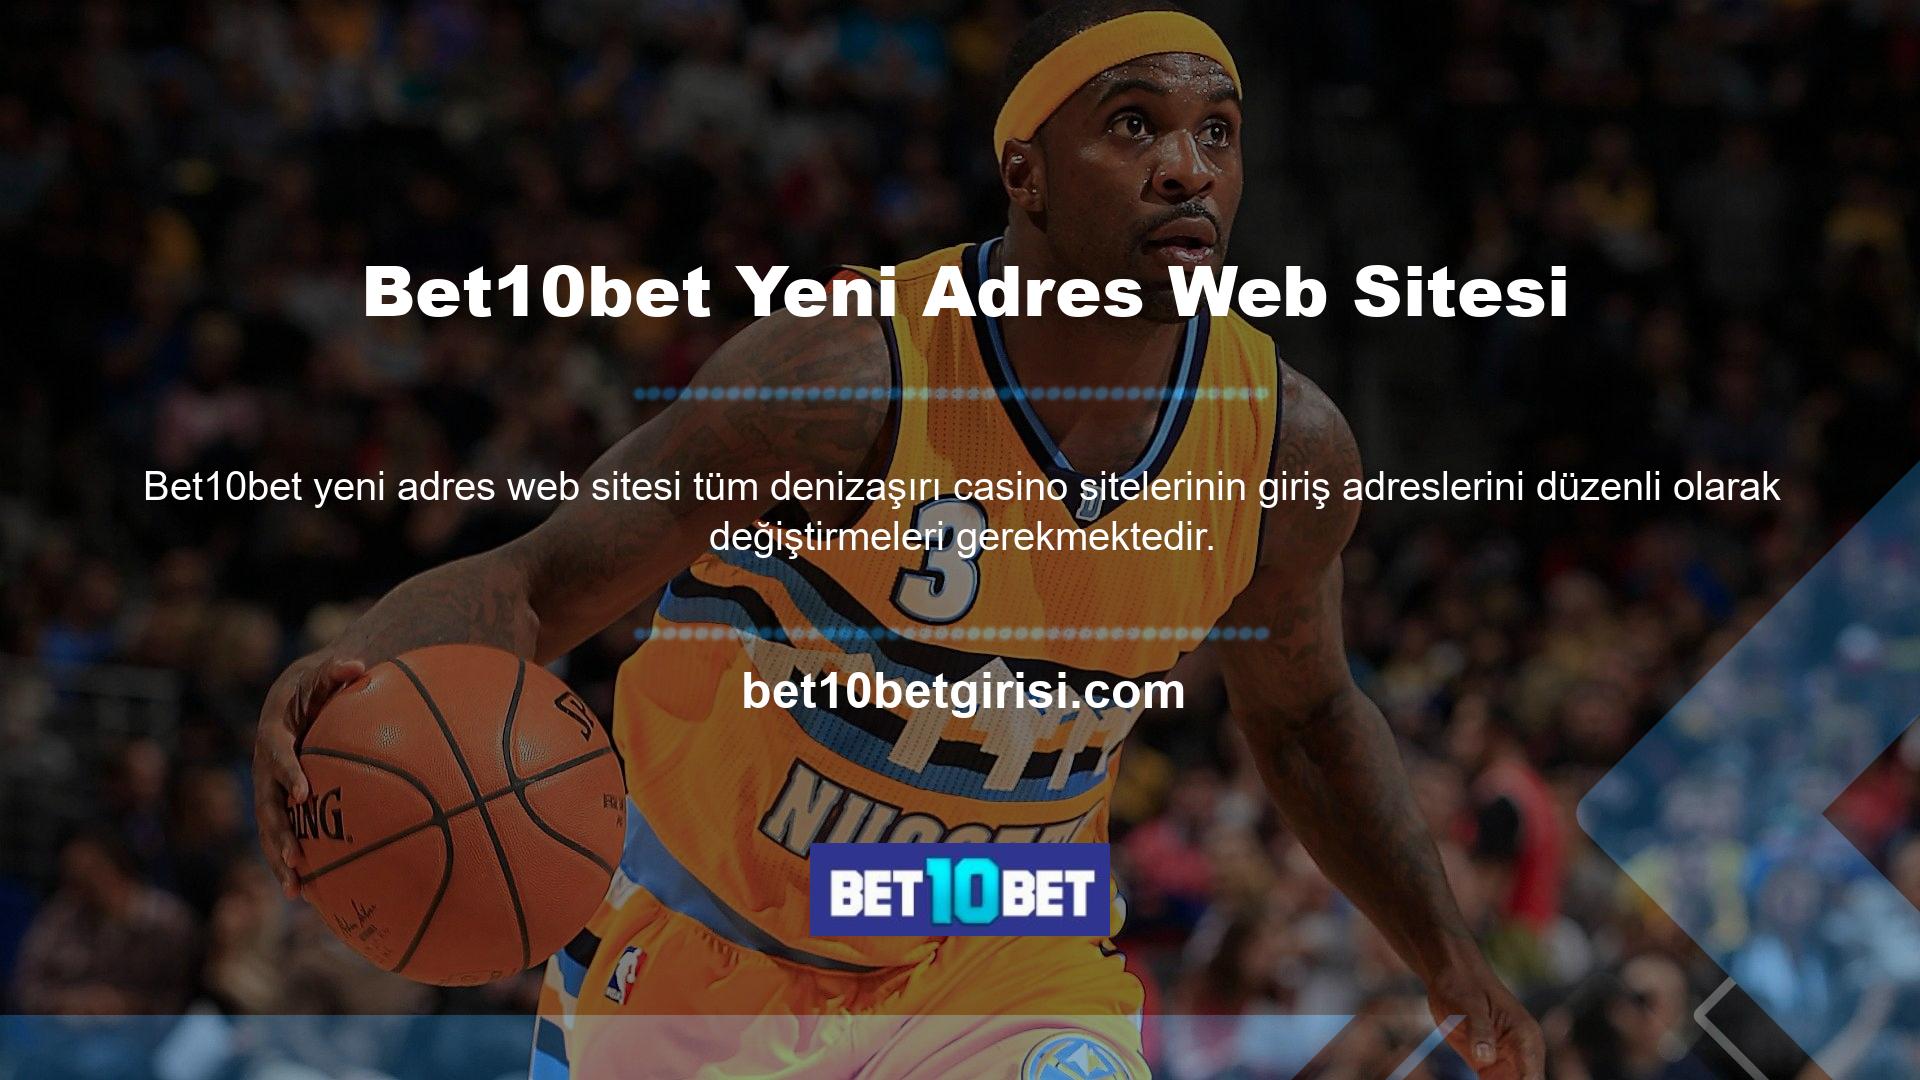 Bet10bet yeni adres web sitesi de bu platformlarda yayında